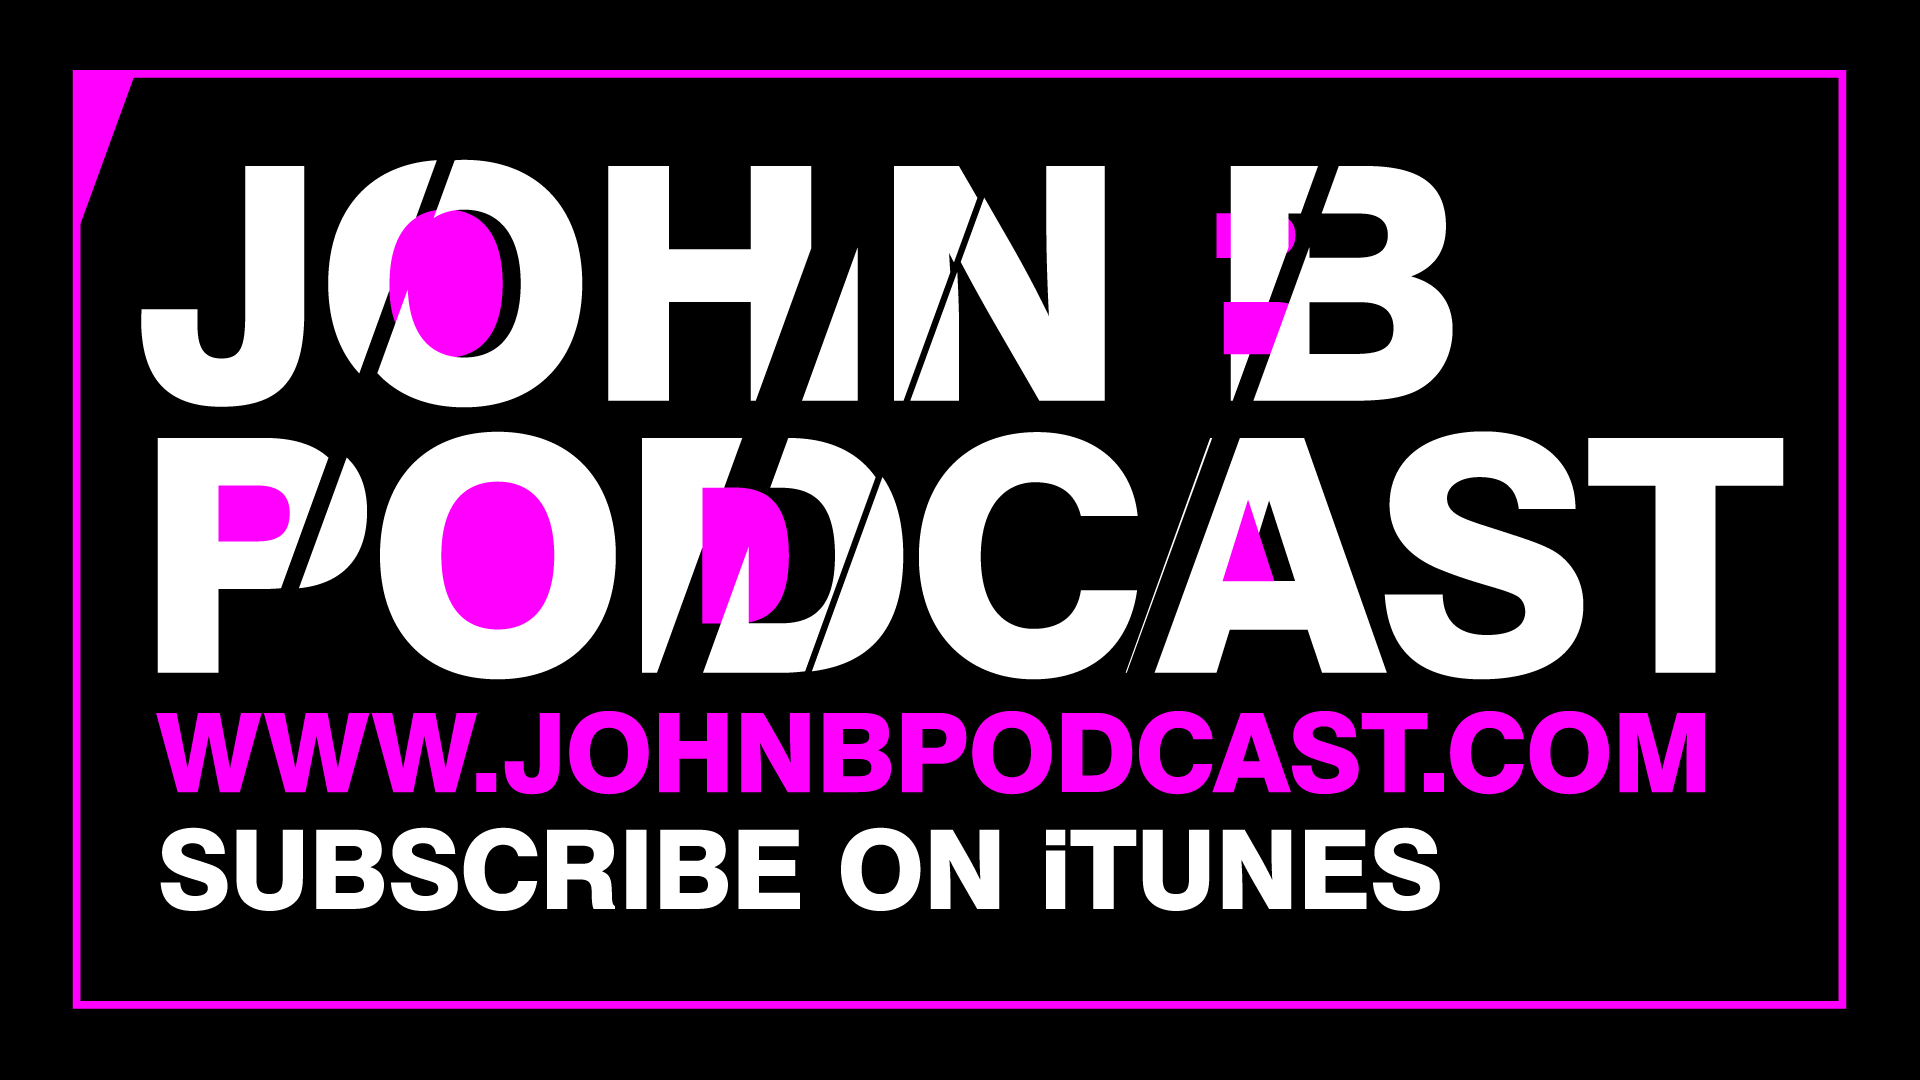 (c) Johnbpodcast.com